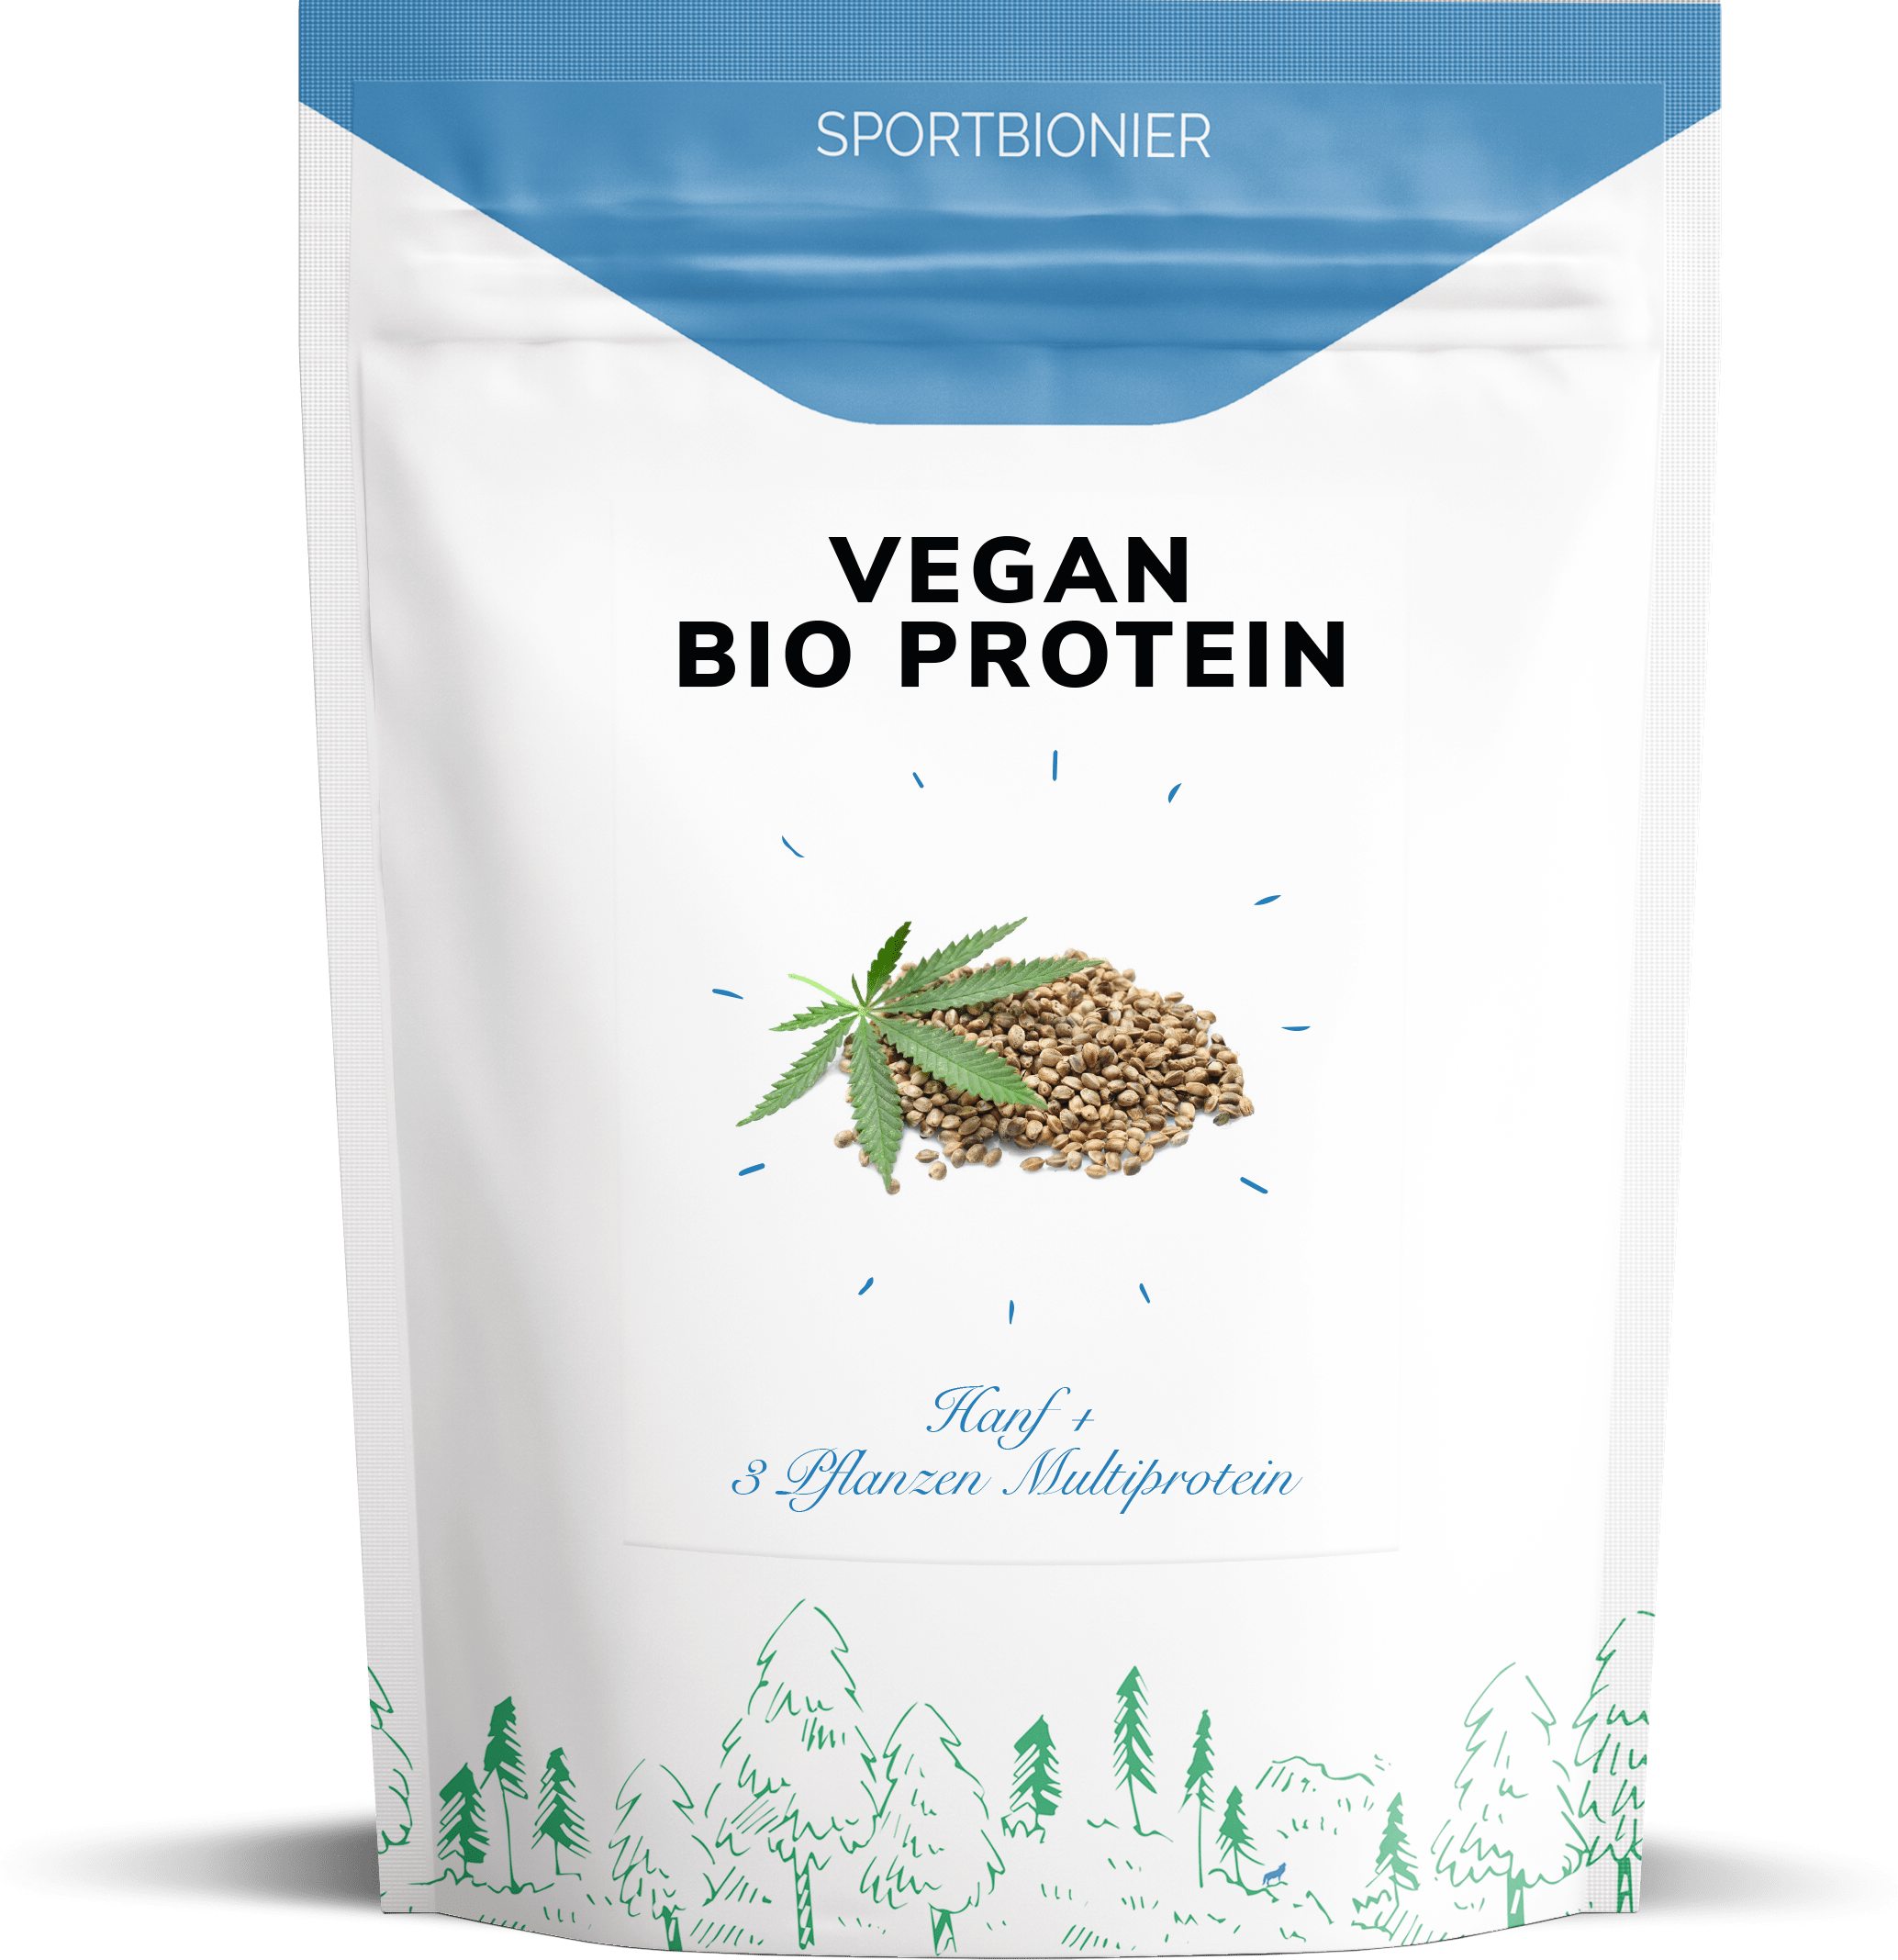 Sportbionier Bio Vegan Protein Hanf+Hanfprotein 500g